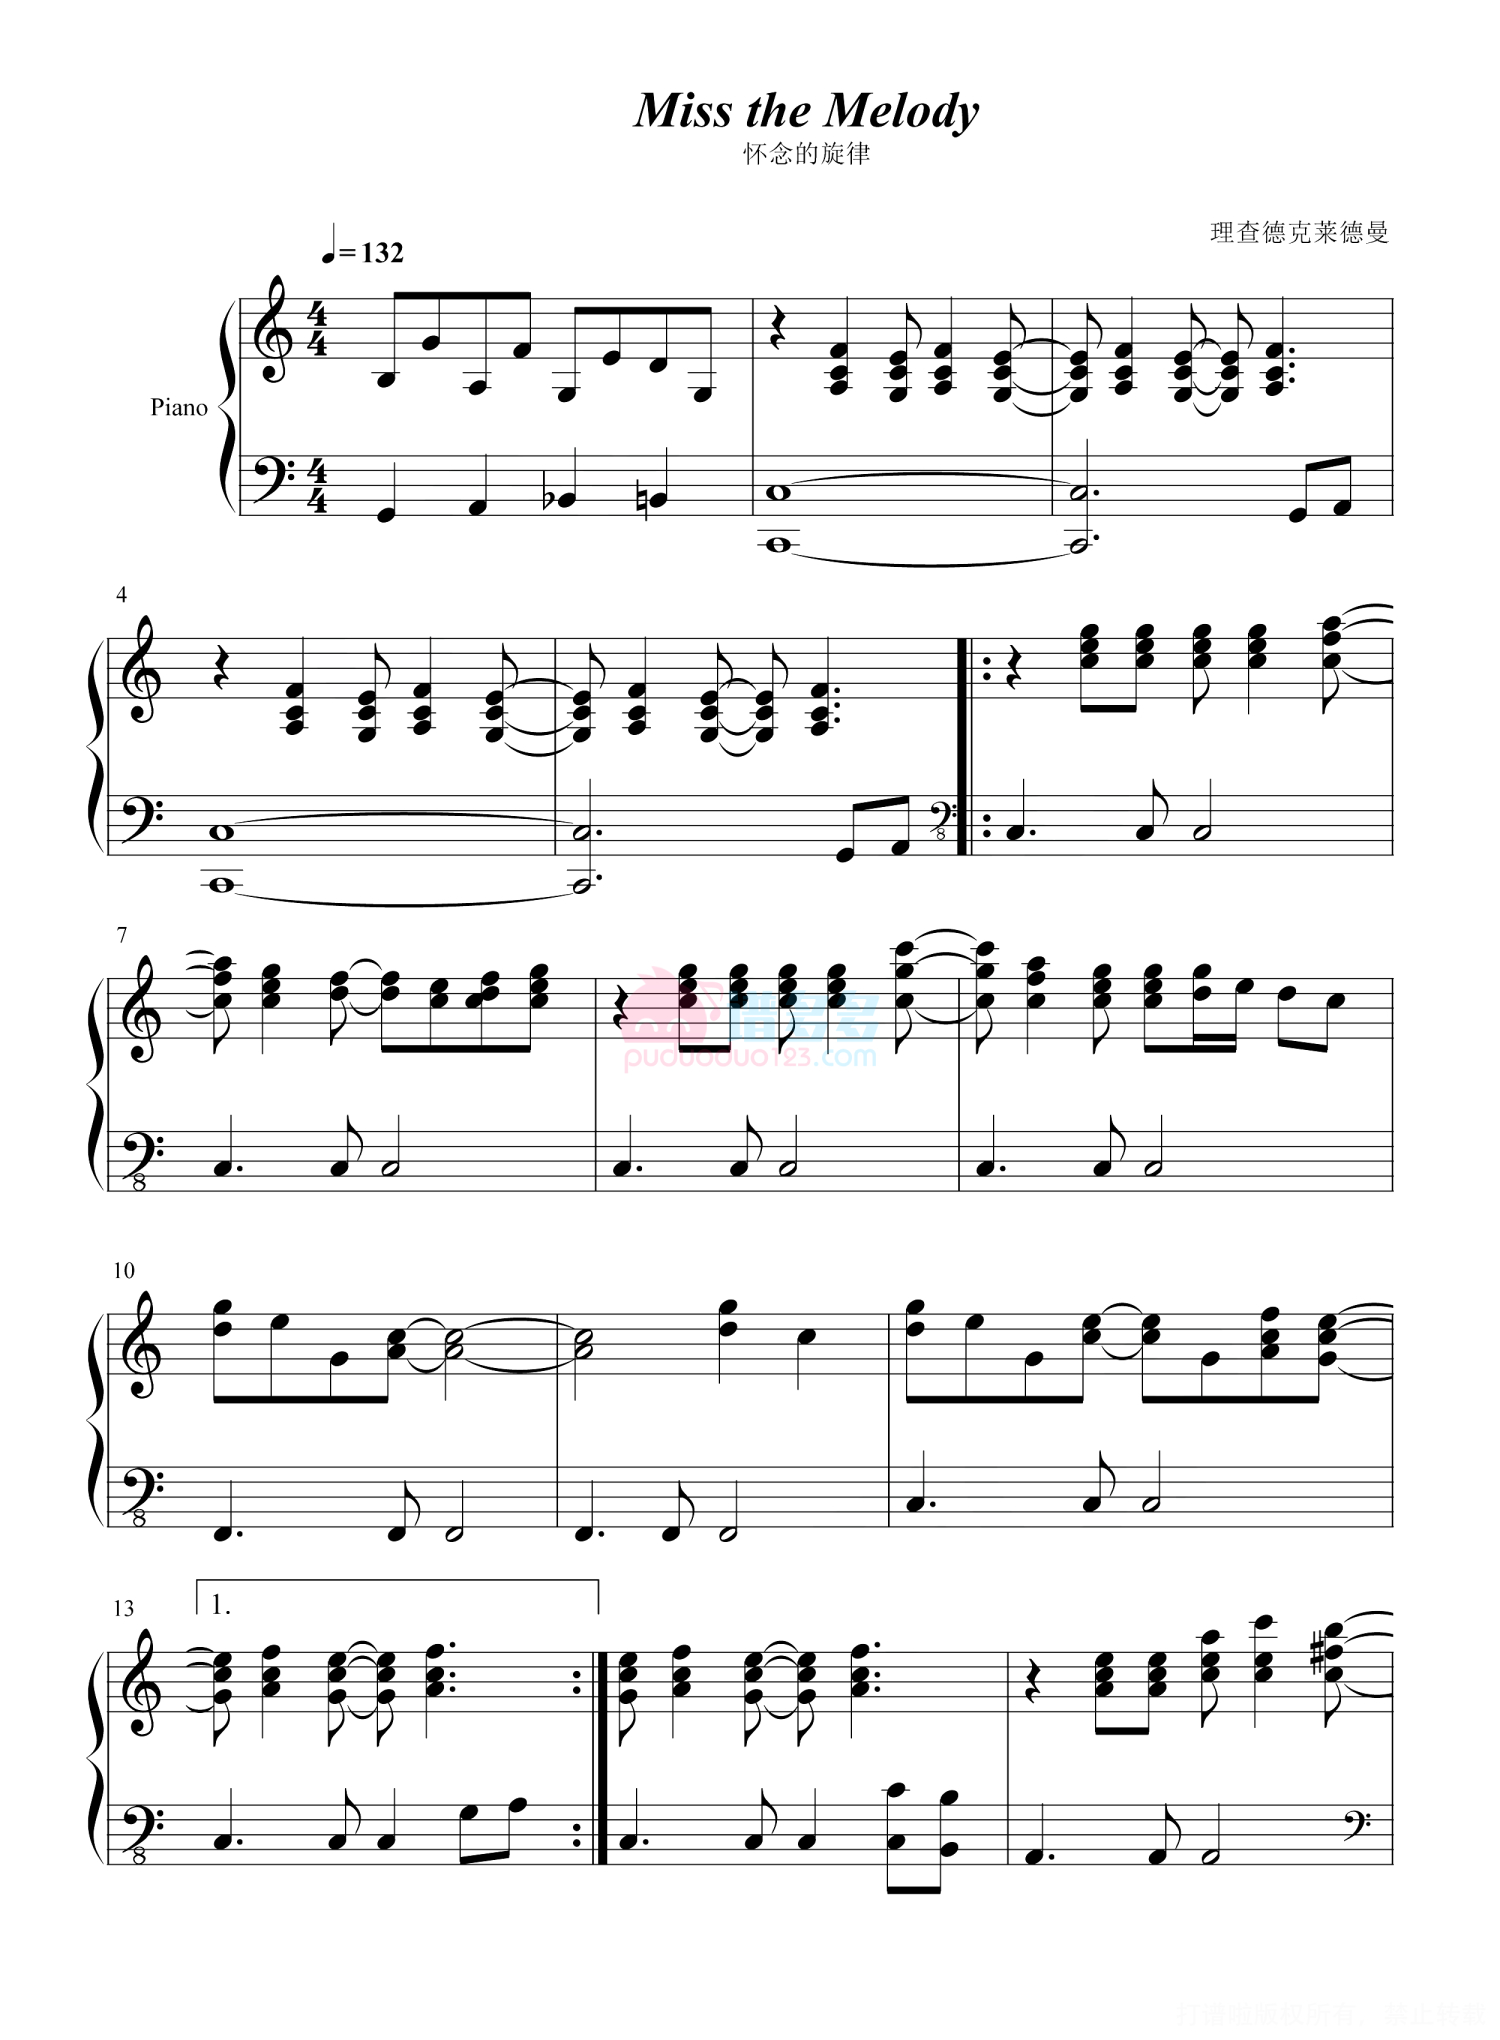 理查德·克莱德曼 Richard Clayderman《怀念的旋律-Miss the Melody》钢琴谱第1张